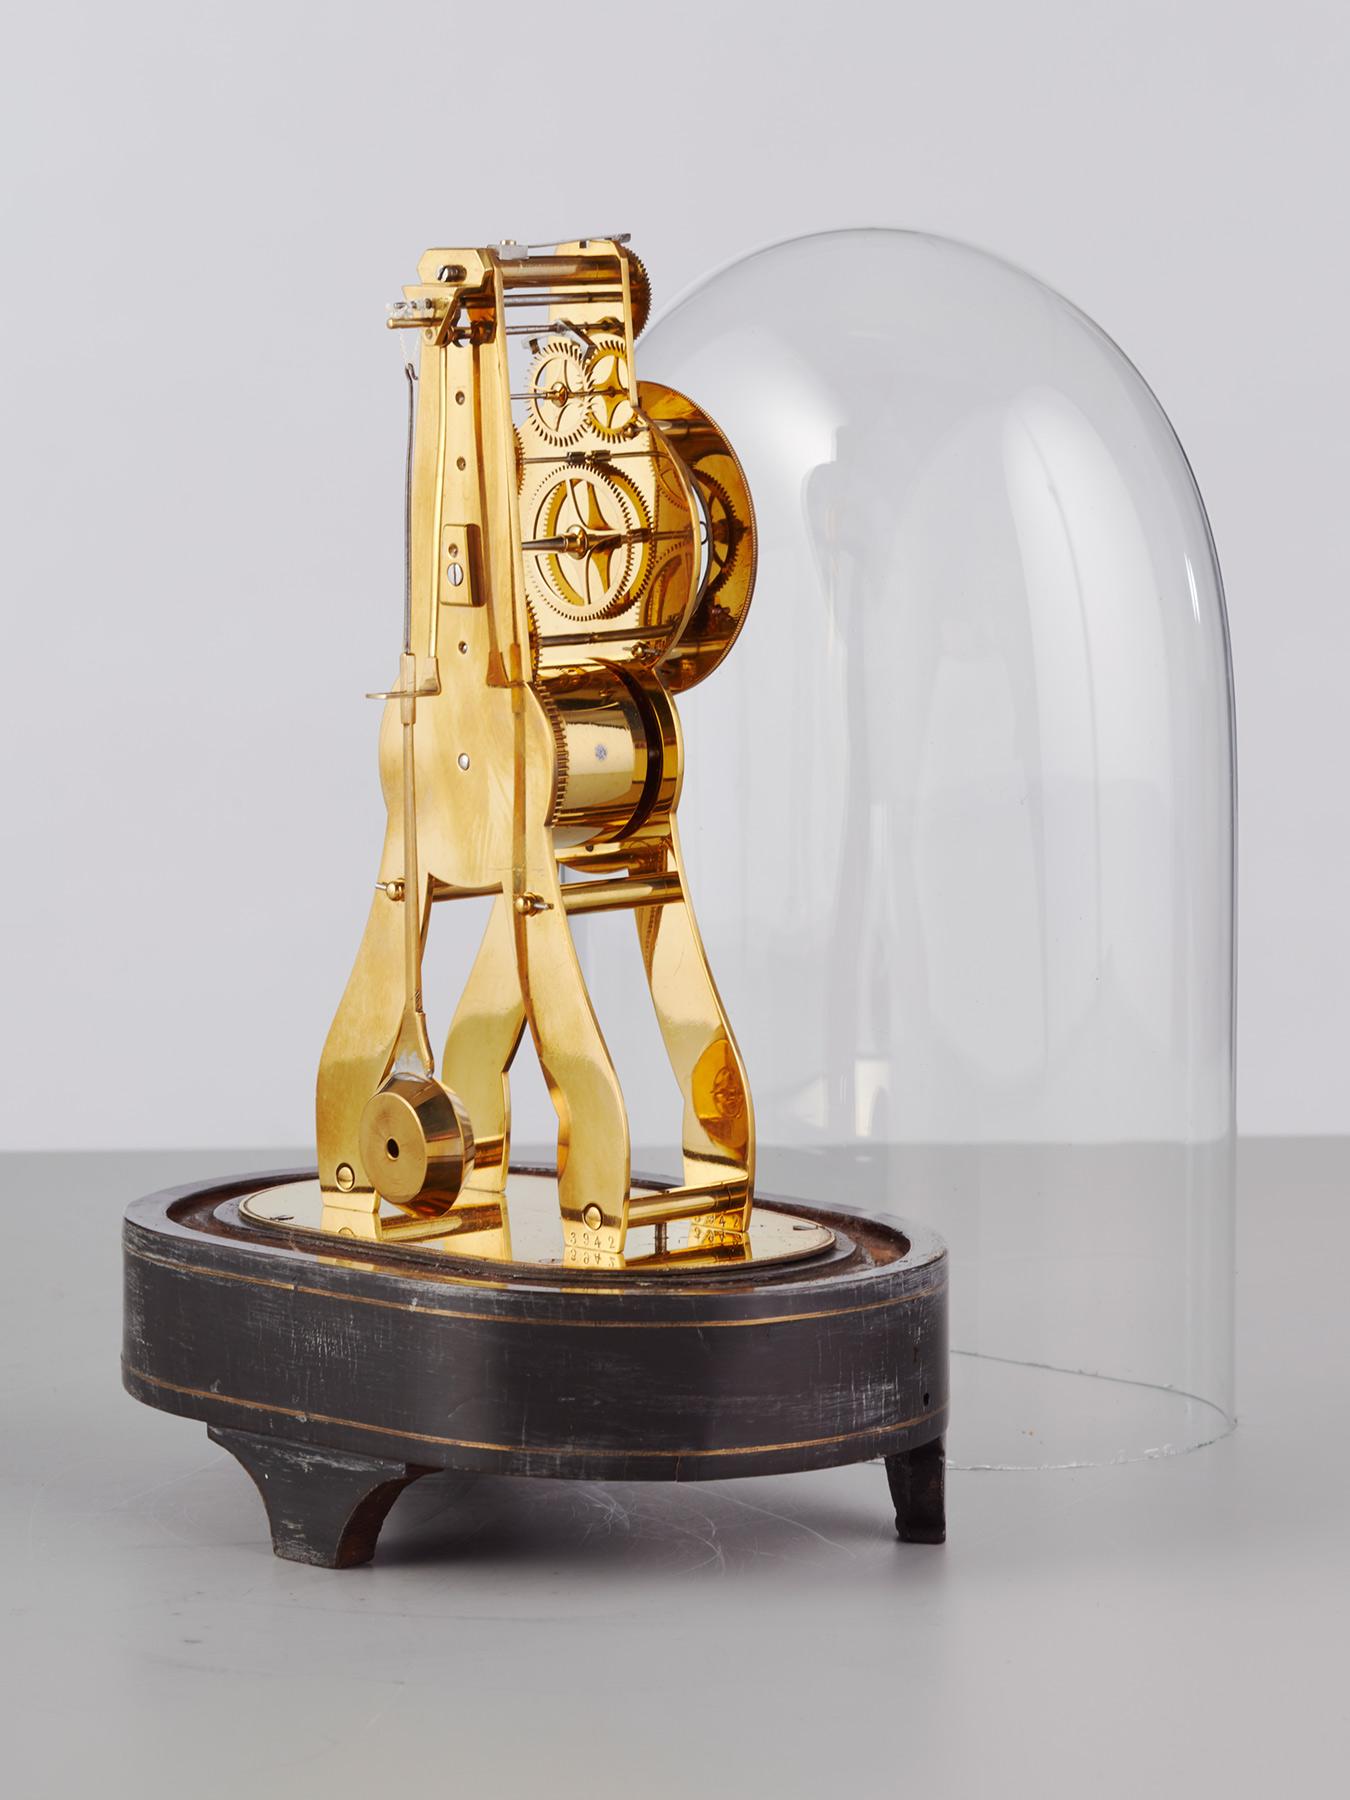 Un charmant garde-temps miniature squeletté réalisé pour la Grande Exposition de Paris de 1889. Le beau cadre squelettique en bronze finement gravé et le magnifique balancier gravé assorti rendent cette horloge plus attrayante que la moyenne - il y